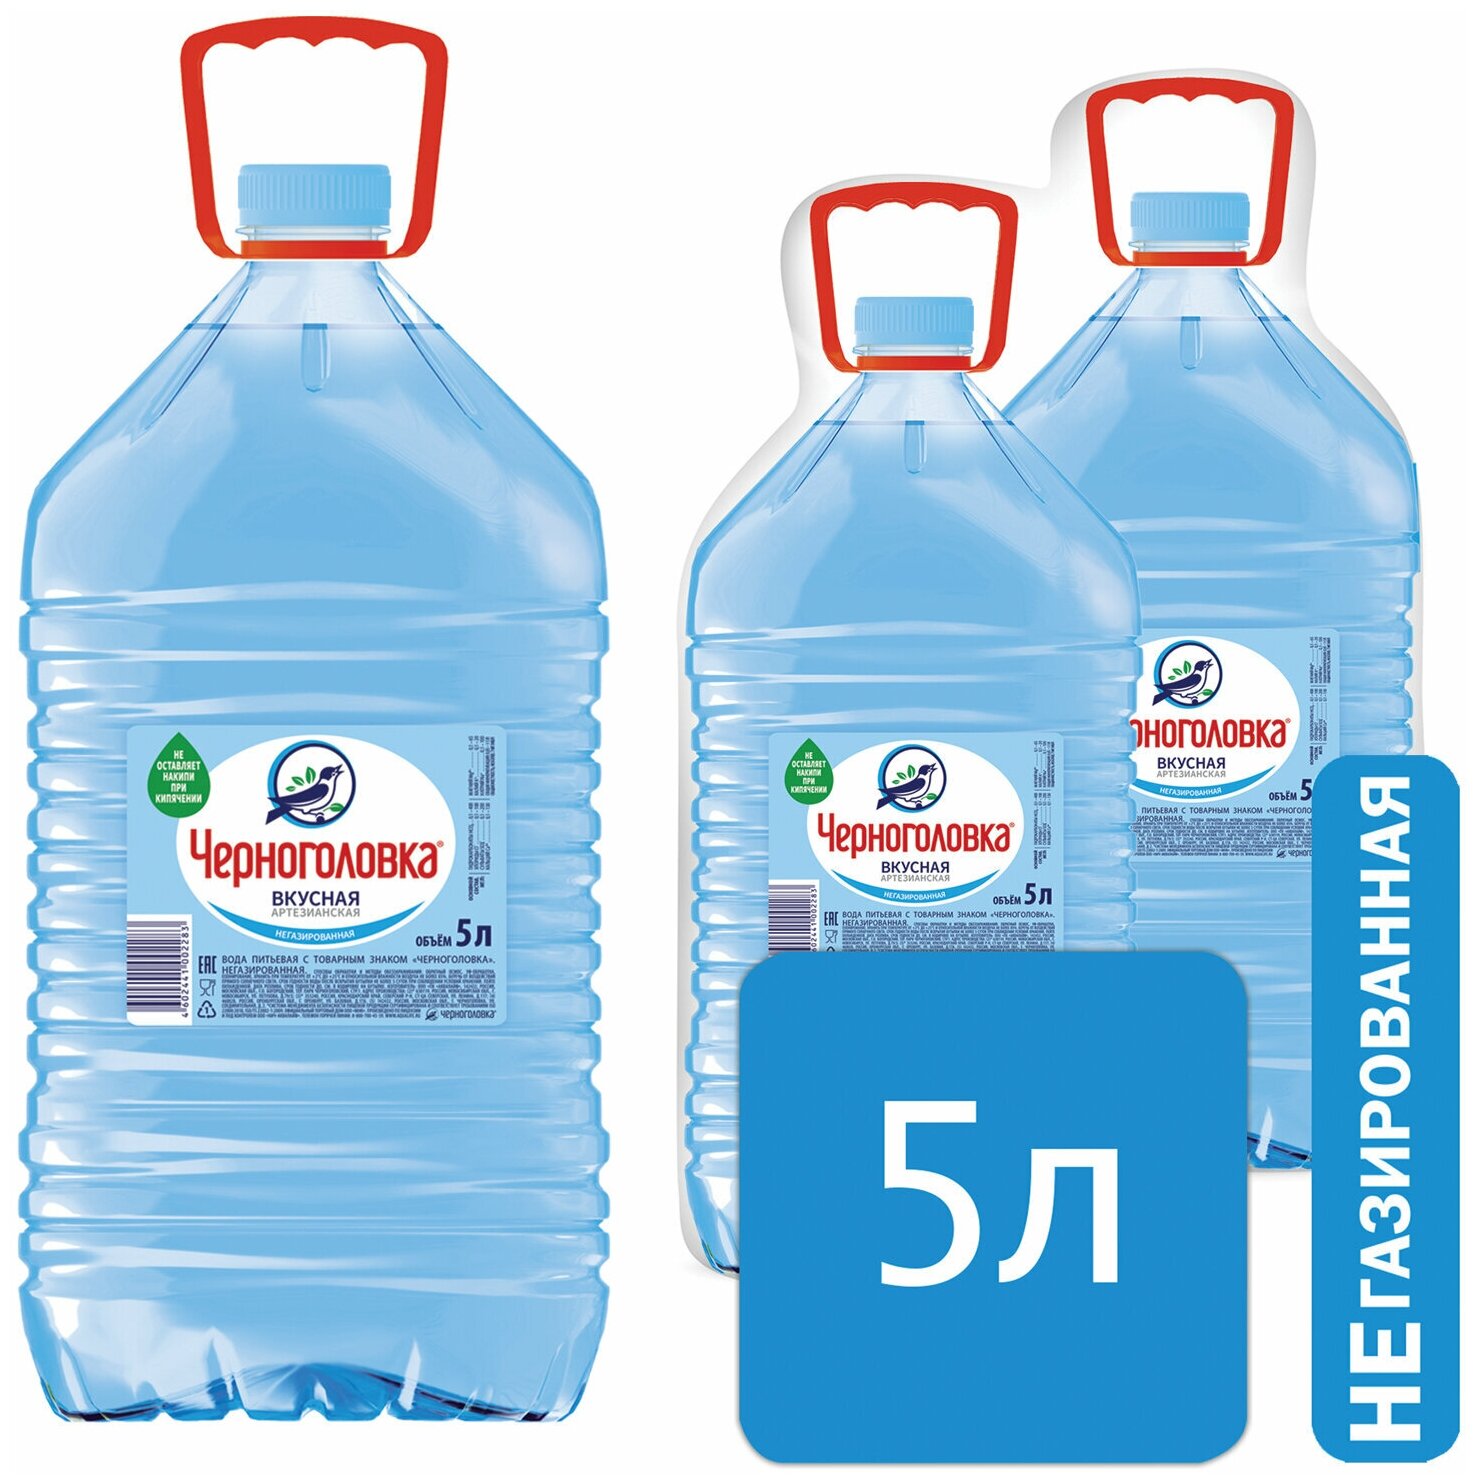 Вода негазированная питьевая "черноголовская", 5 л, пластиковая бутылка. — купить в интернет-магазине по низкой цене на Яндекс Маркете